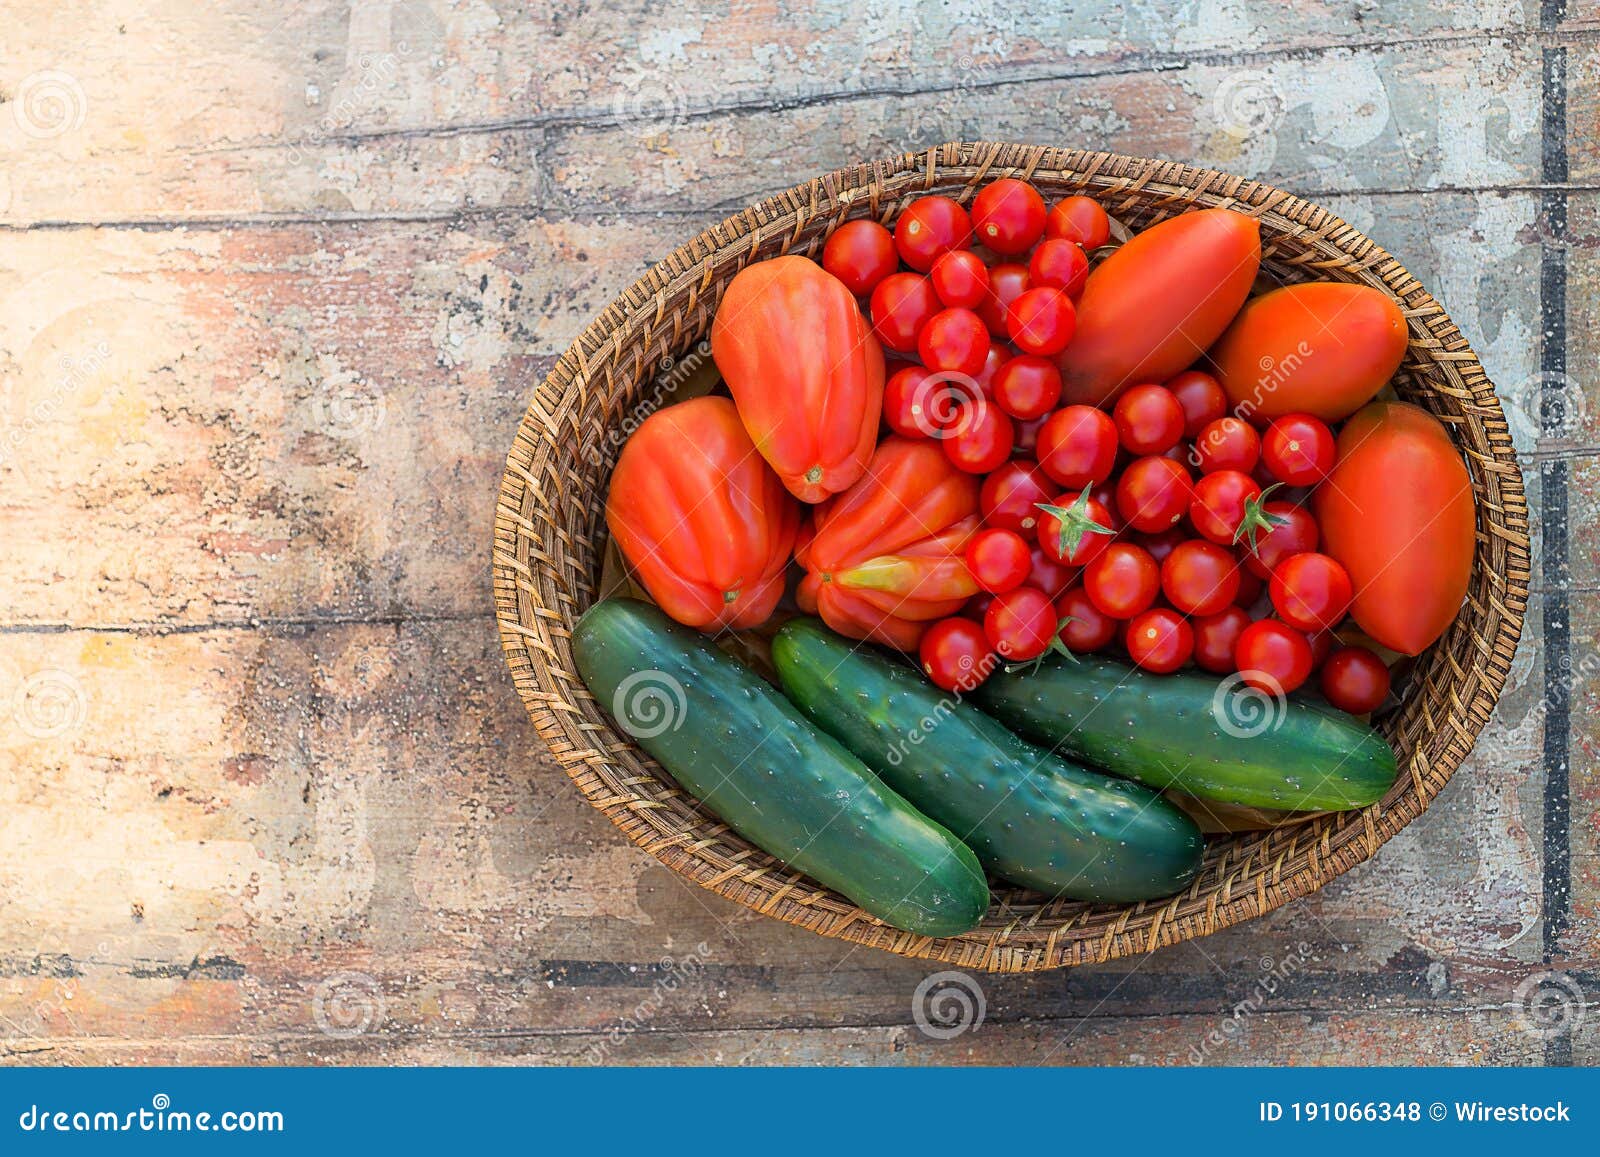 composizione di pomodori e cetrioli